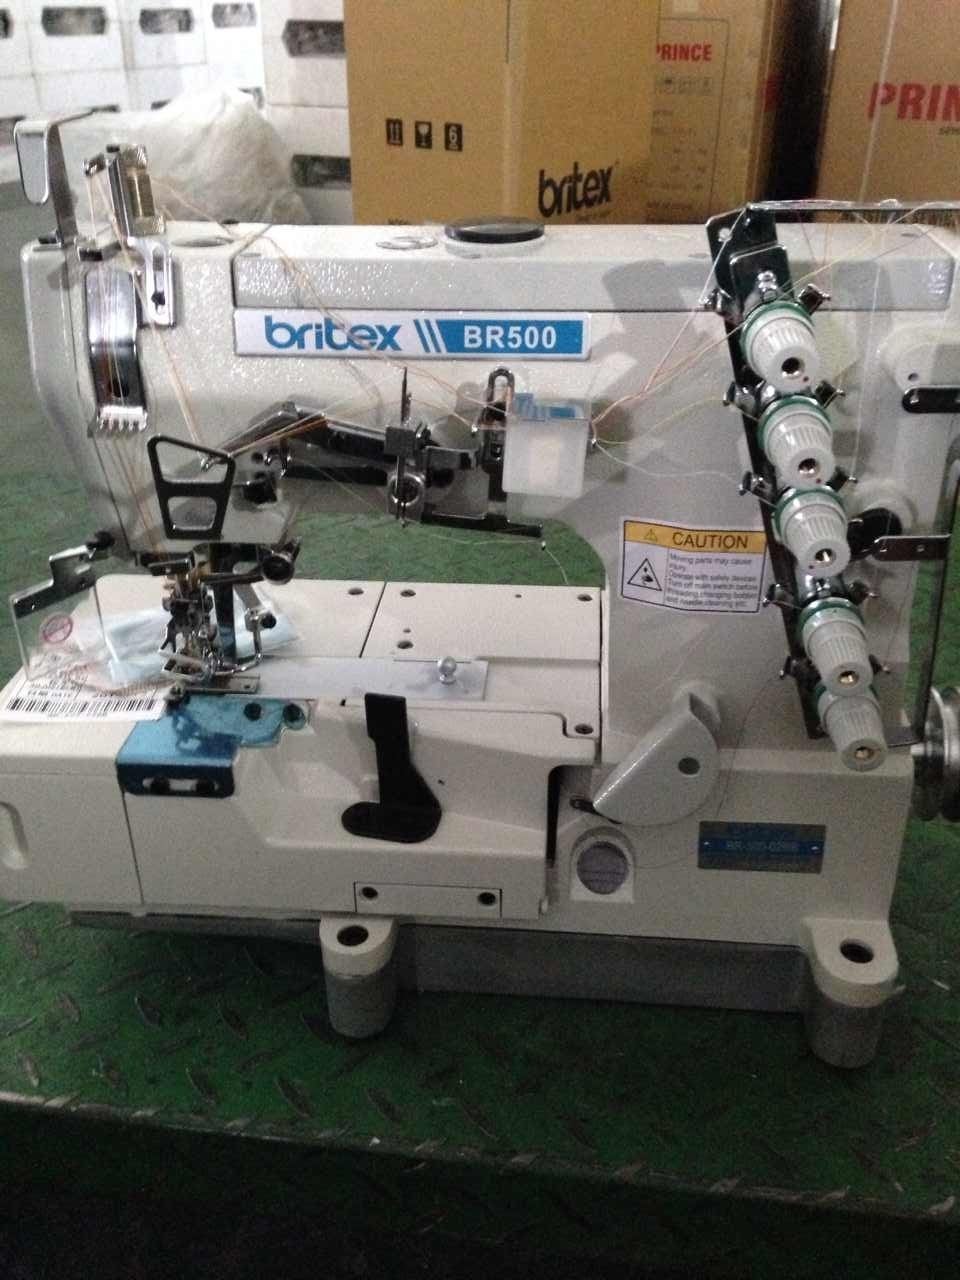 Br-500-01CB High Speed Interlock Sewing Machine